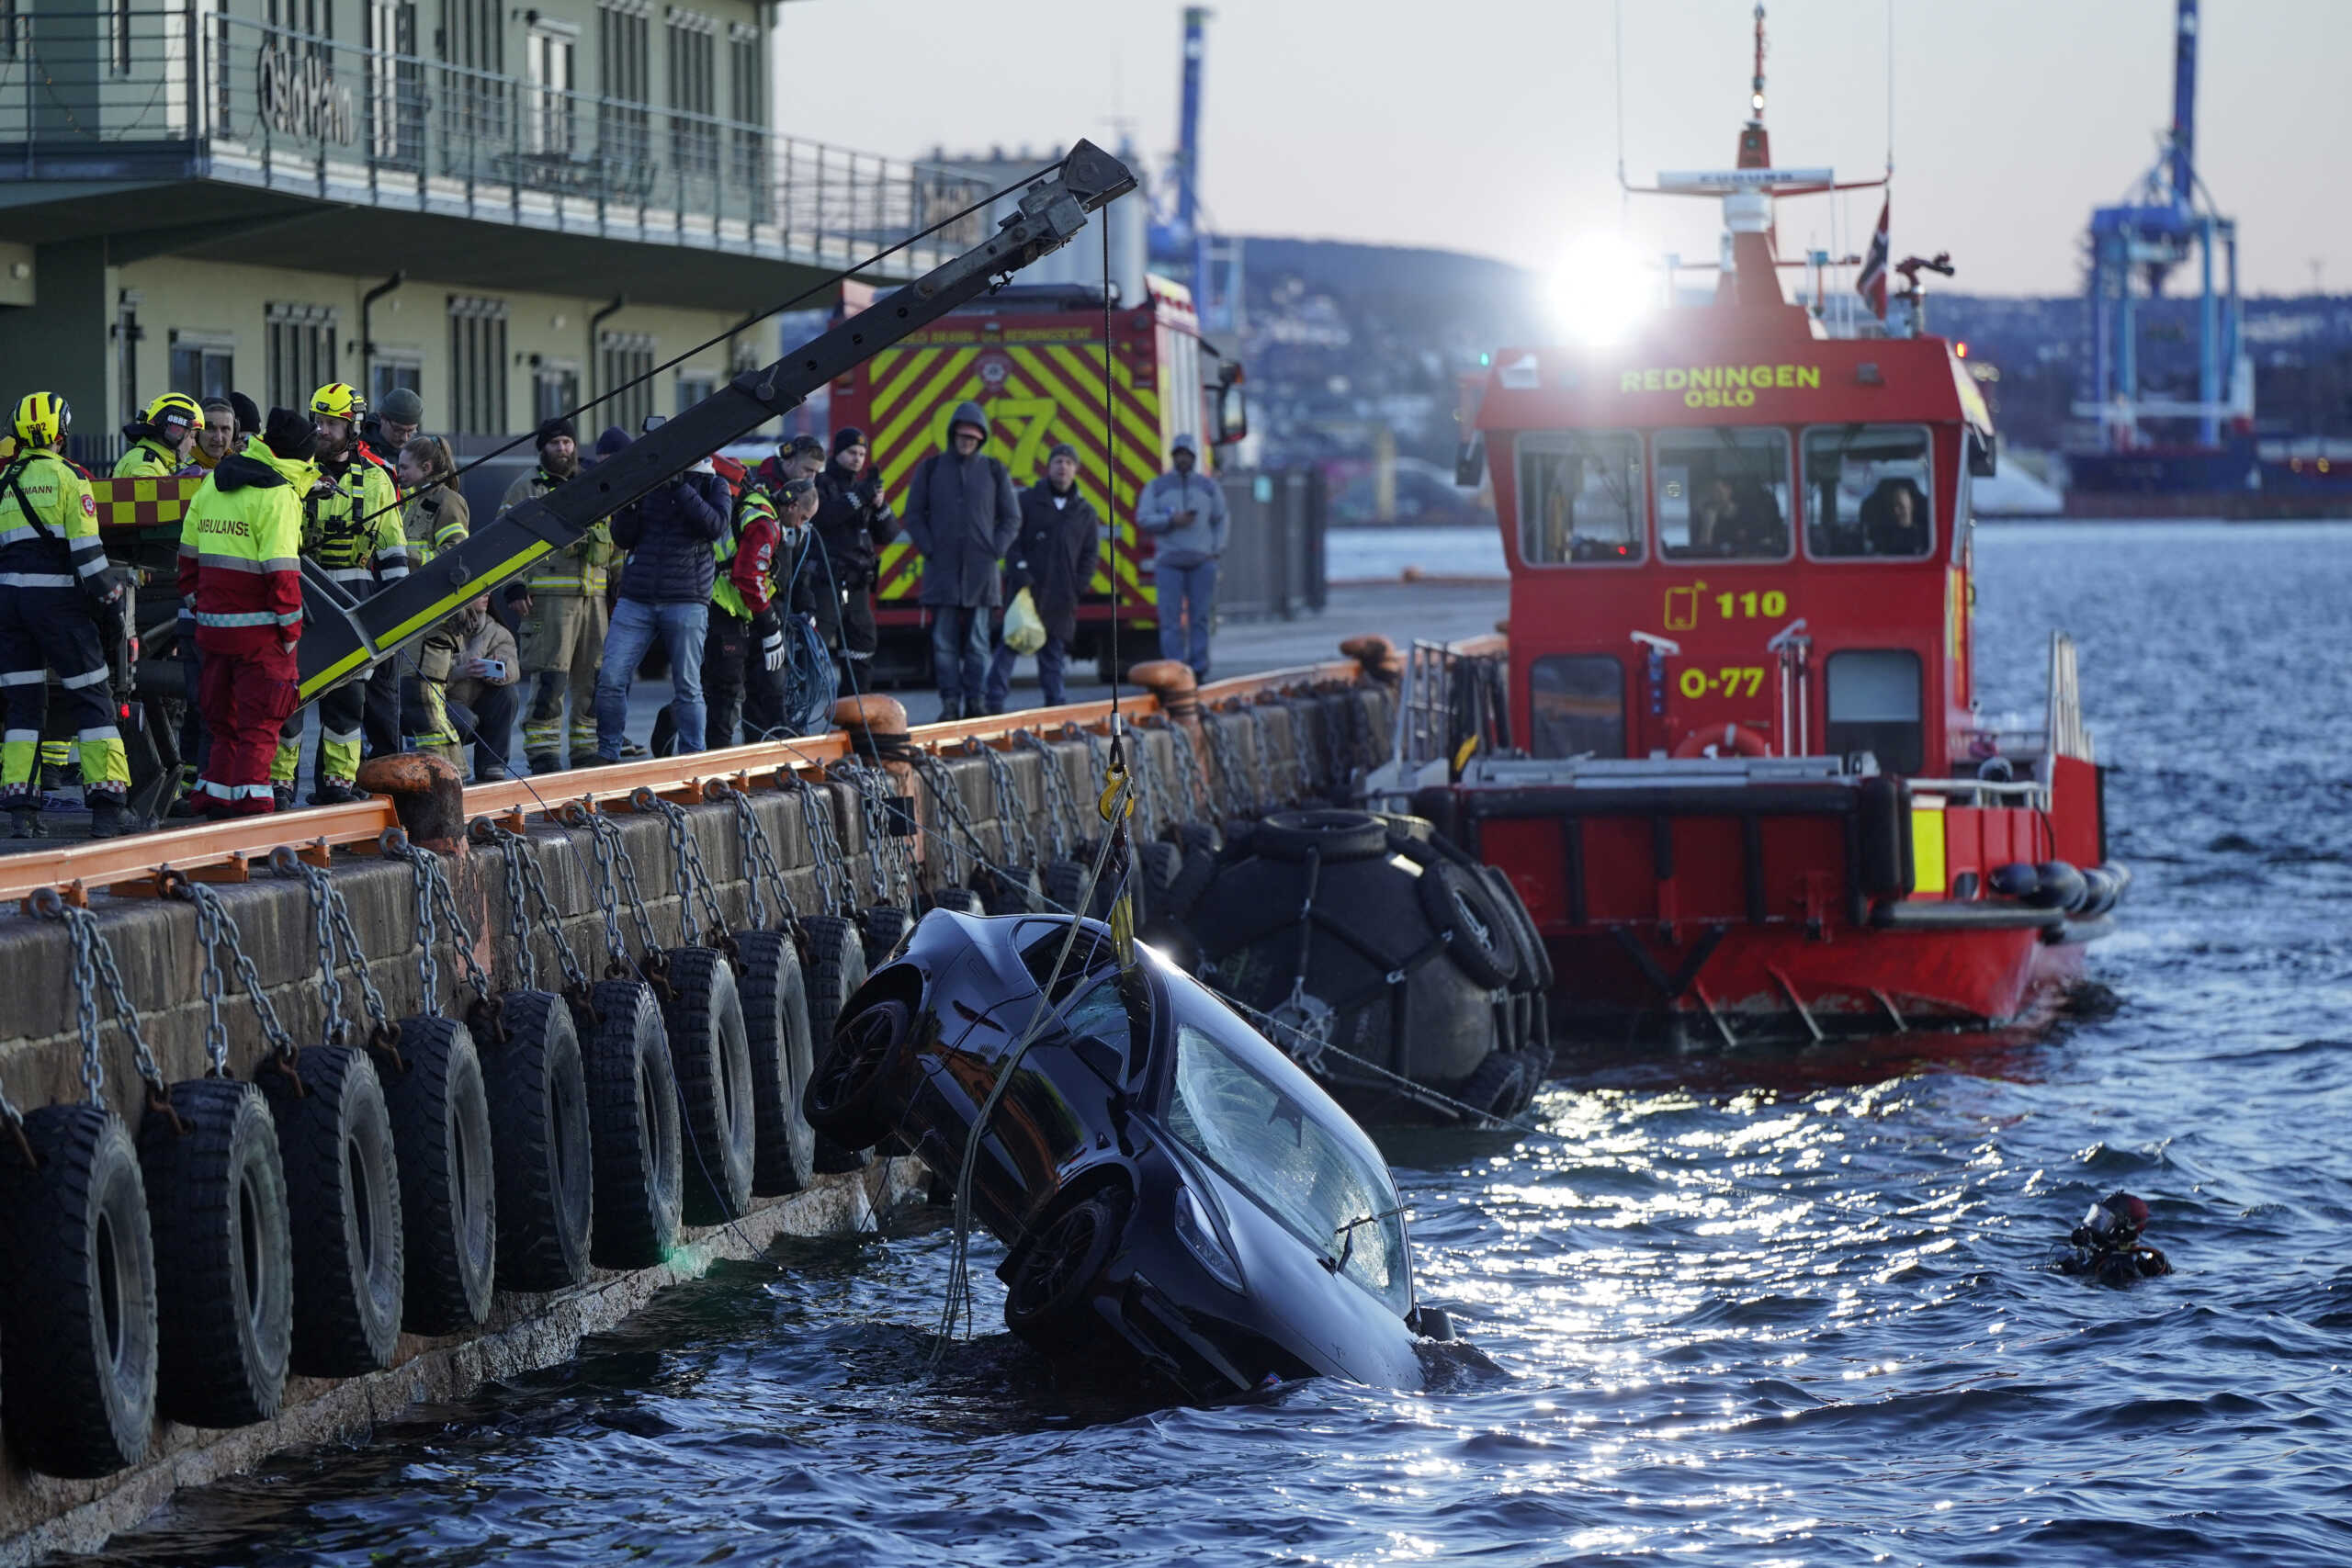 Νορβηγία: Αυτοκίνητο έπεσε σε φιορδ στο Όσλο και οι επιβάτες σώθηκαν από σάουνα που επέπλεε